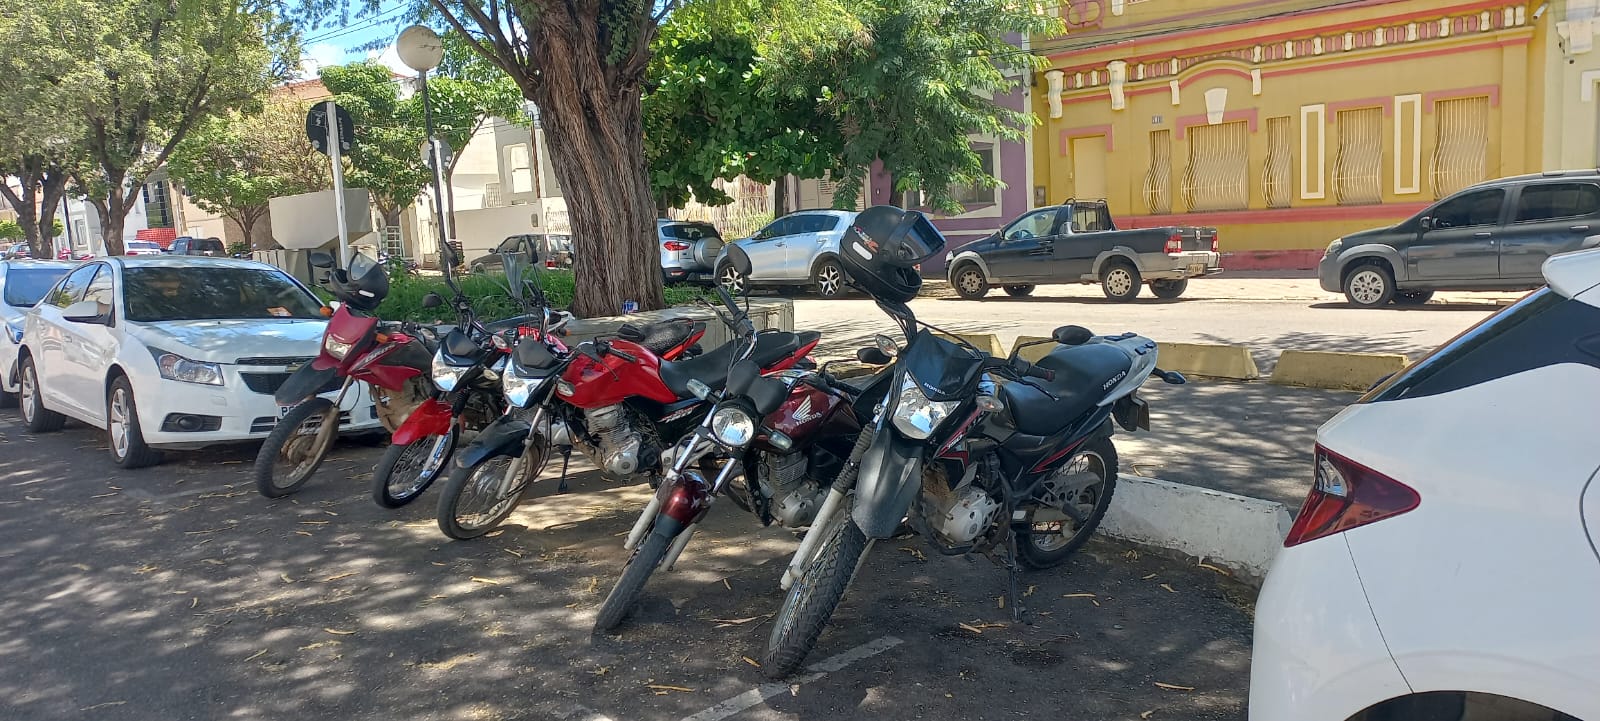 Moradores questionam STTrans sobre motos em vagas de carros